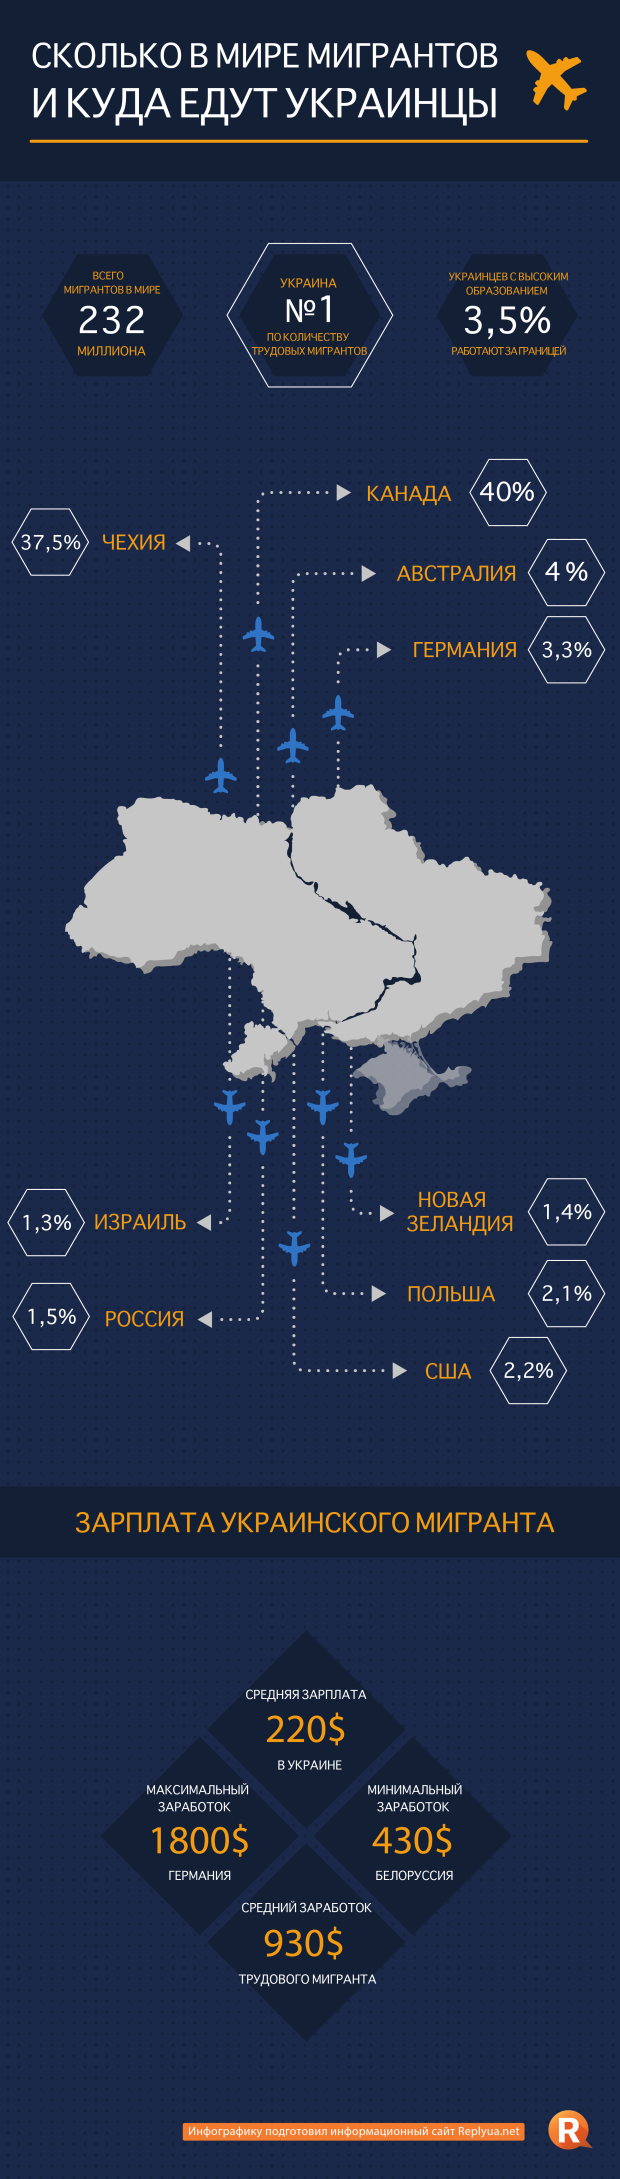 Украинские мигранты по всему миру, статистика - инфографика